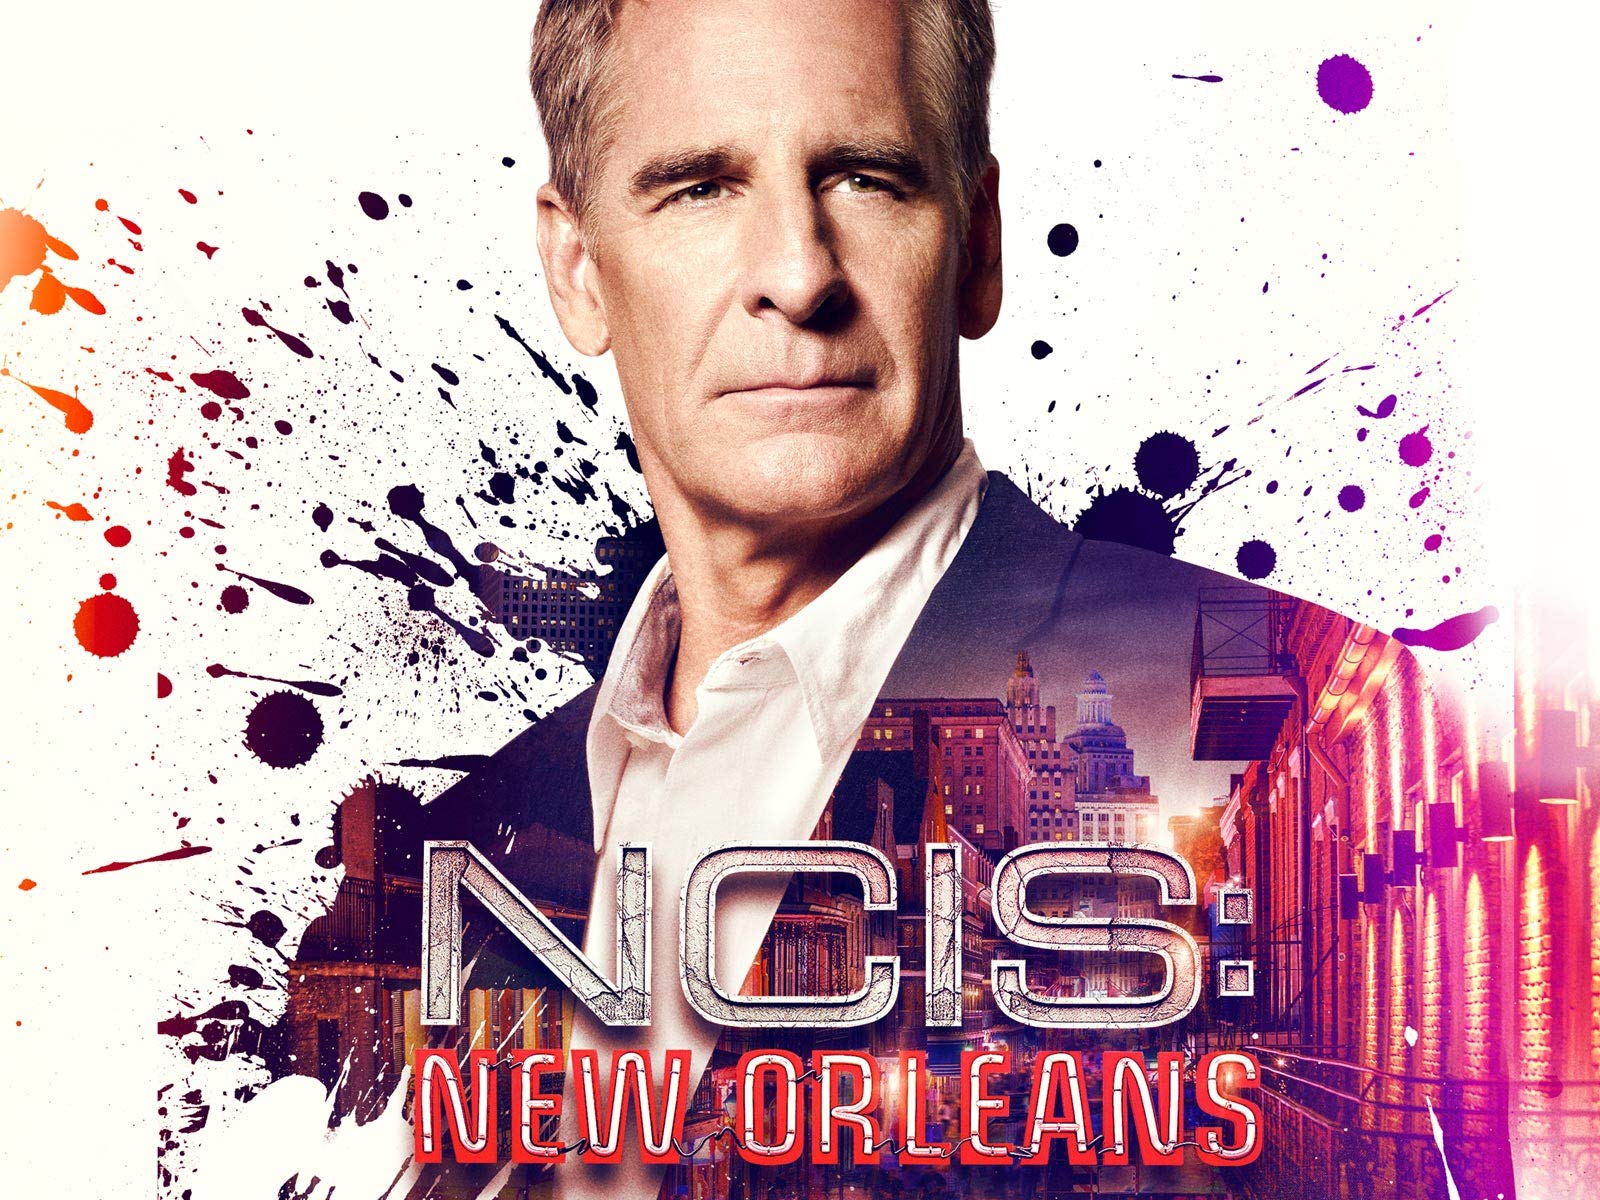 NCIS New Orleans S05 ปฏิบัติการเดือด เมืองคนดุ ปี 5 ทุกตอน พากย์ไทย